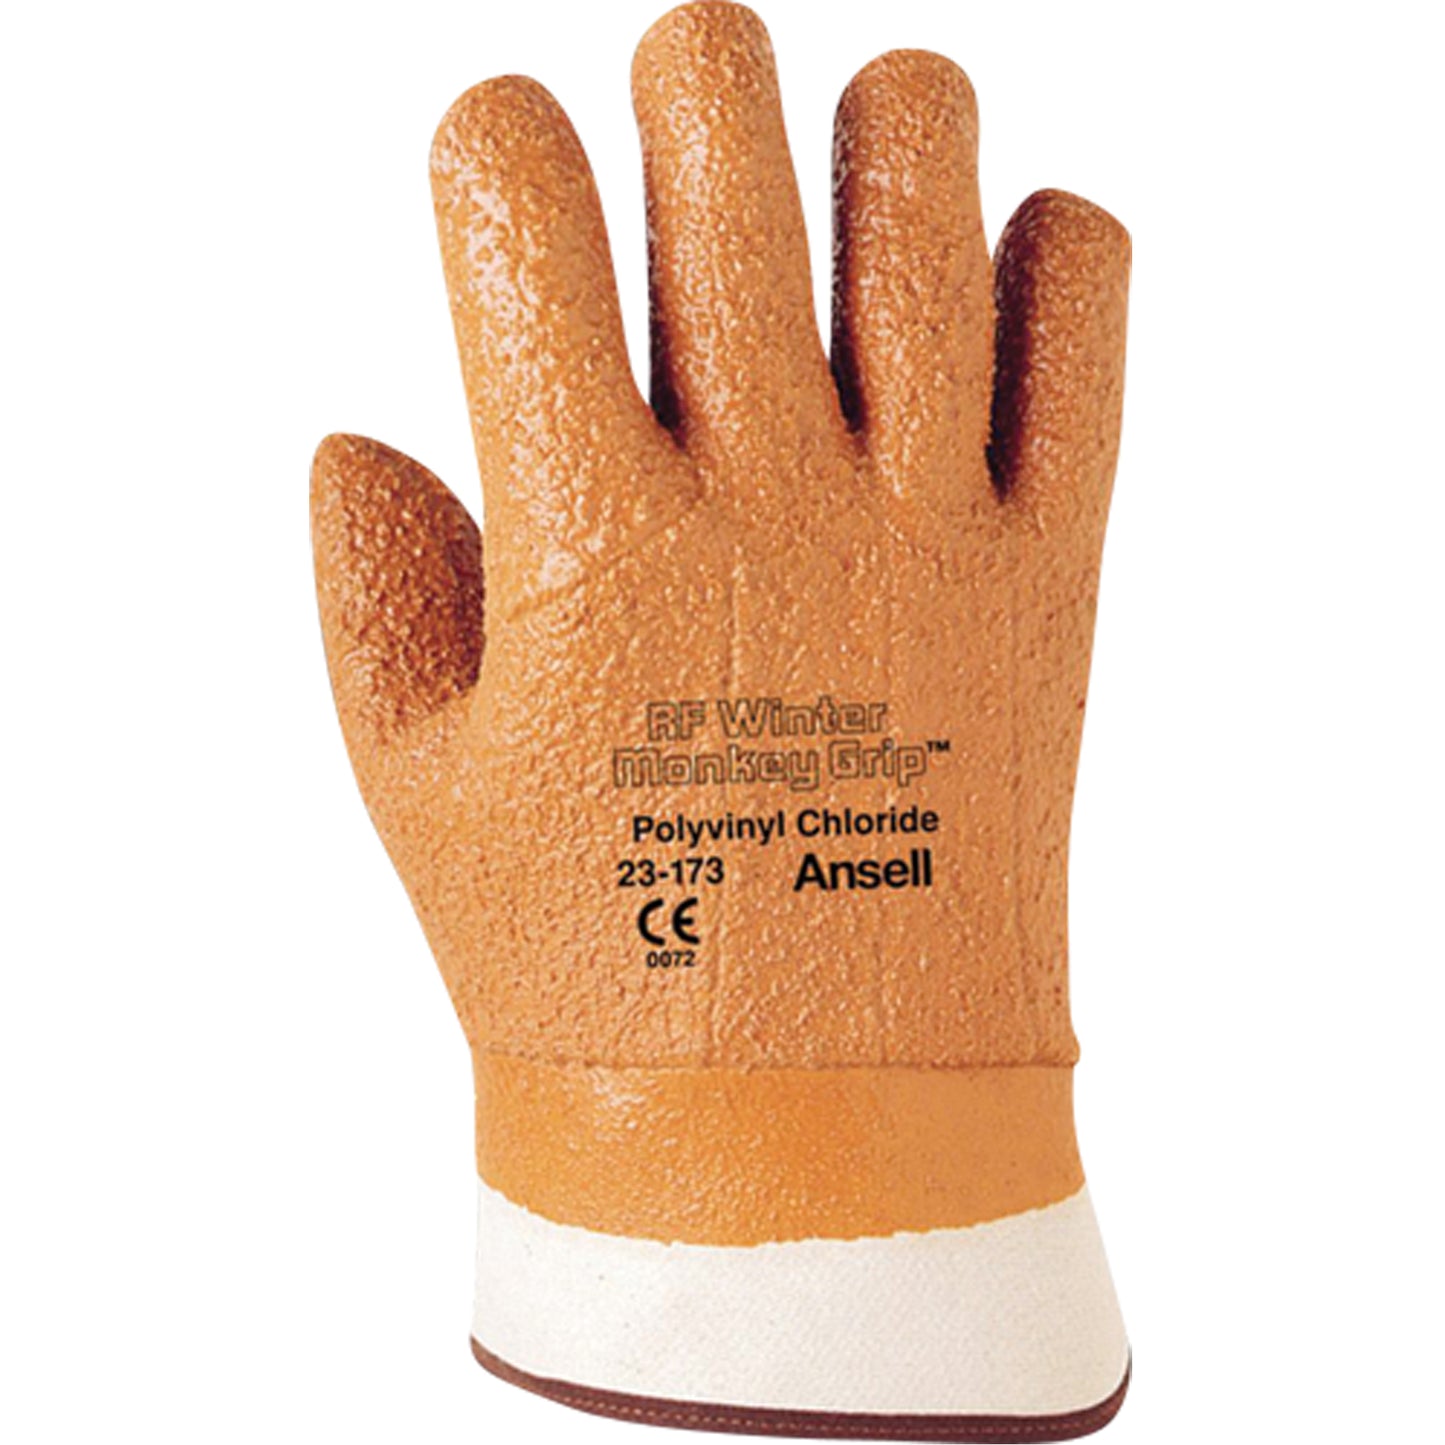 Monkey Grip Winter Gloves SEE953 